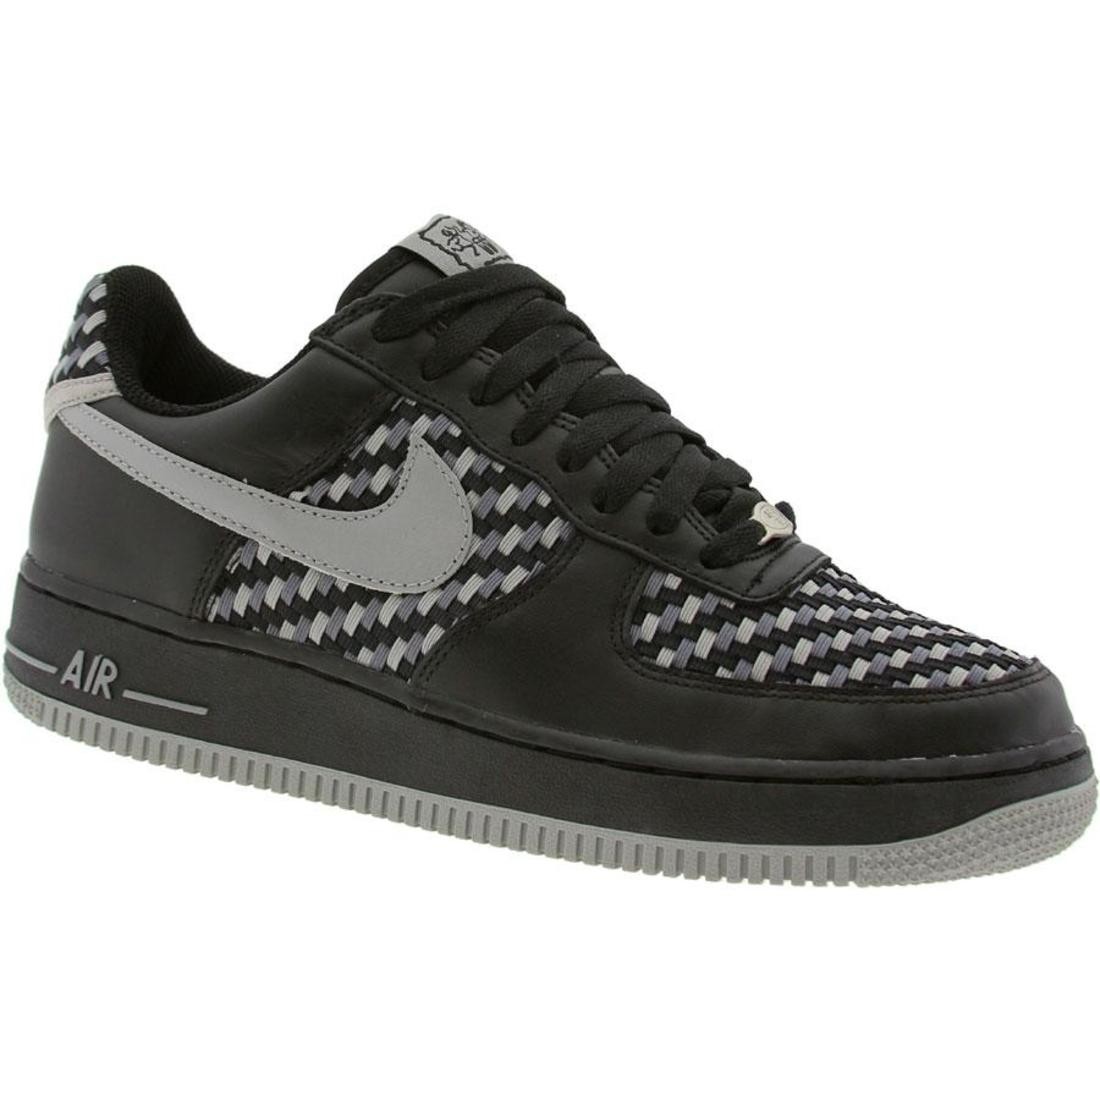 Nike Men Air Force 1 Low Premium (black / grey / graphite)